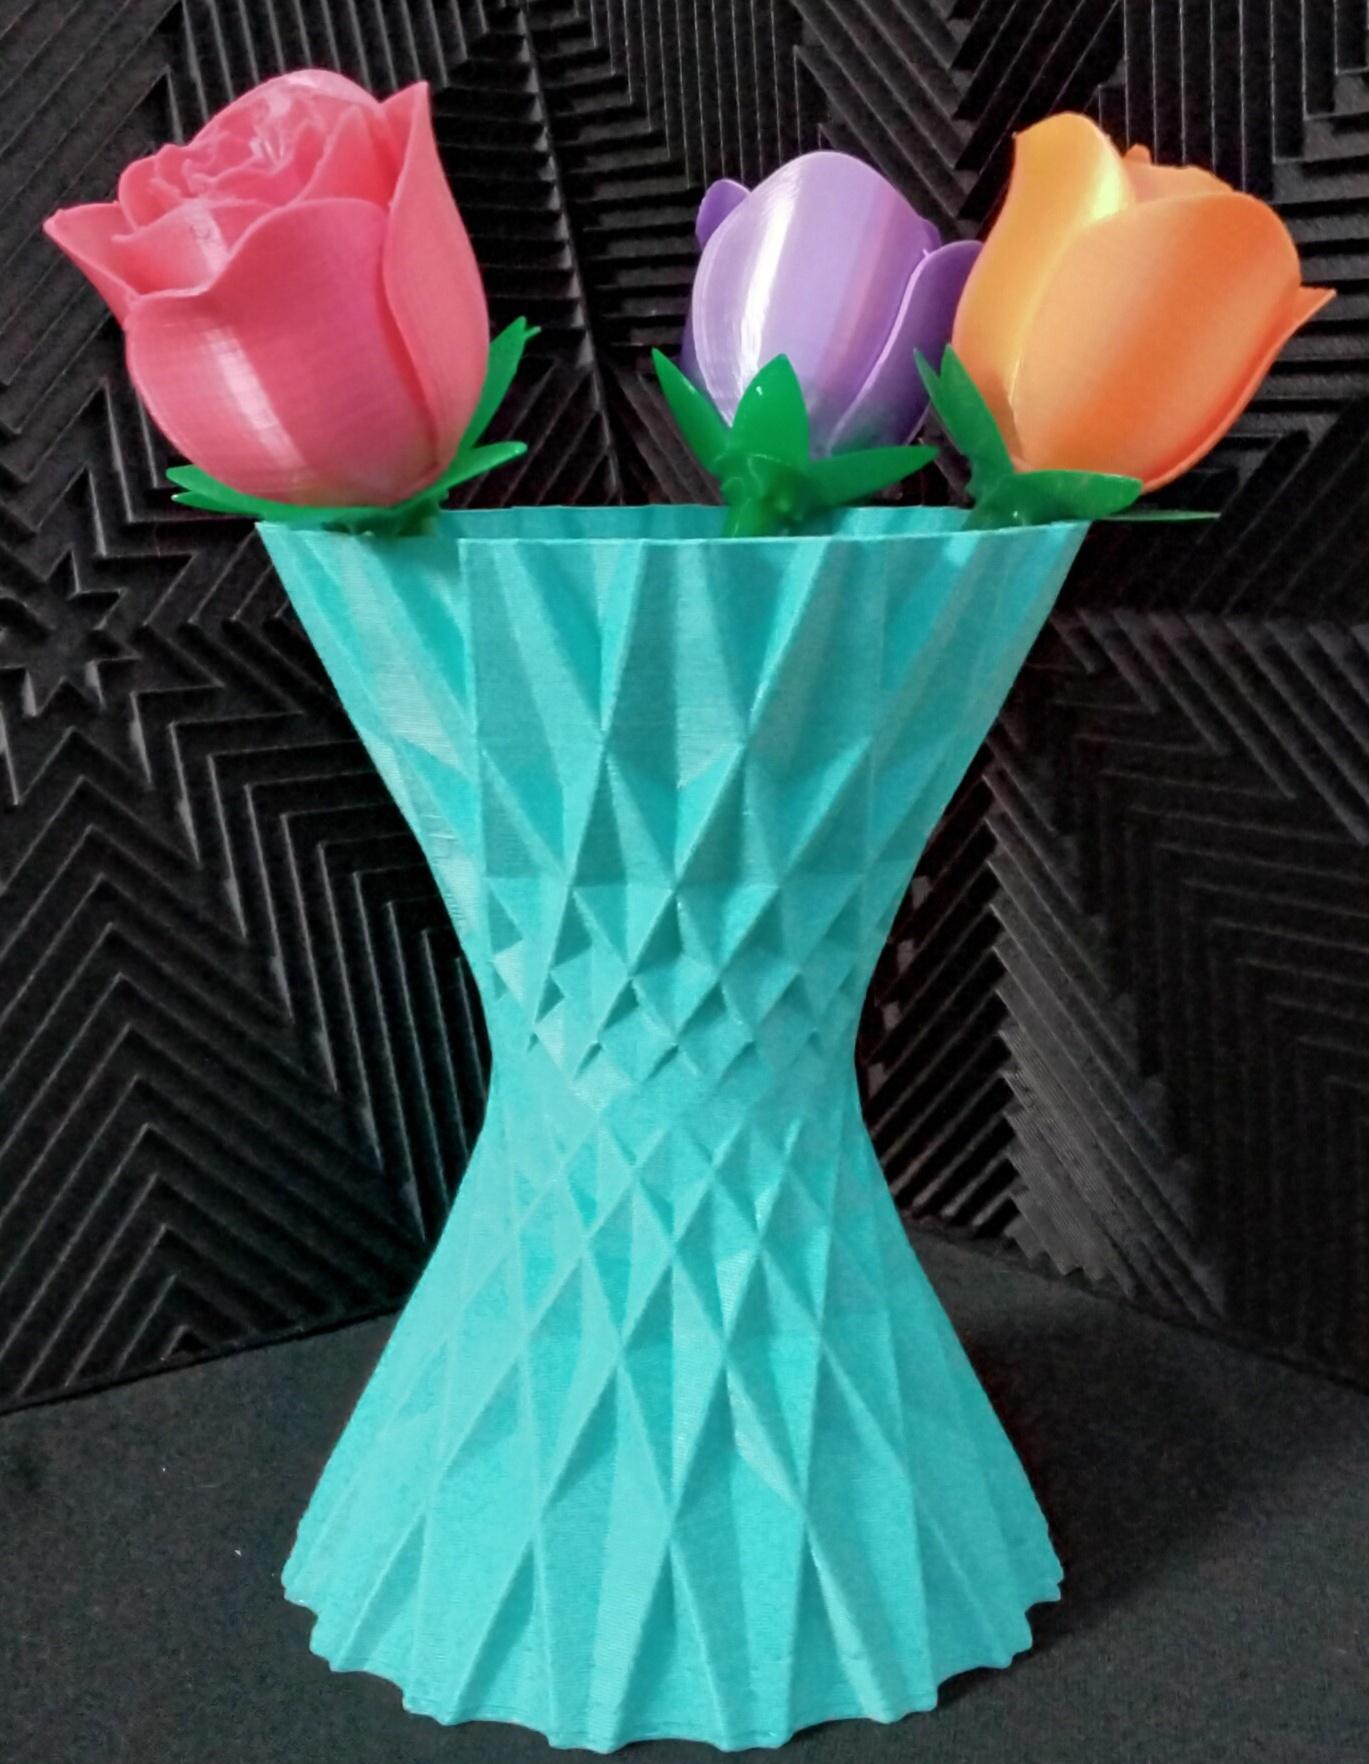 Vases 3d model